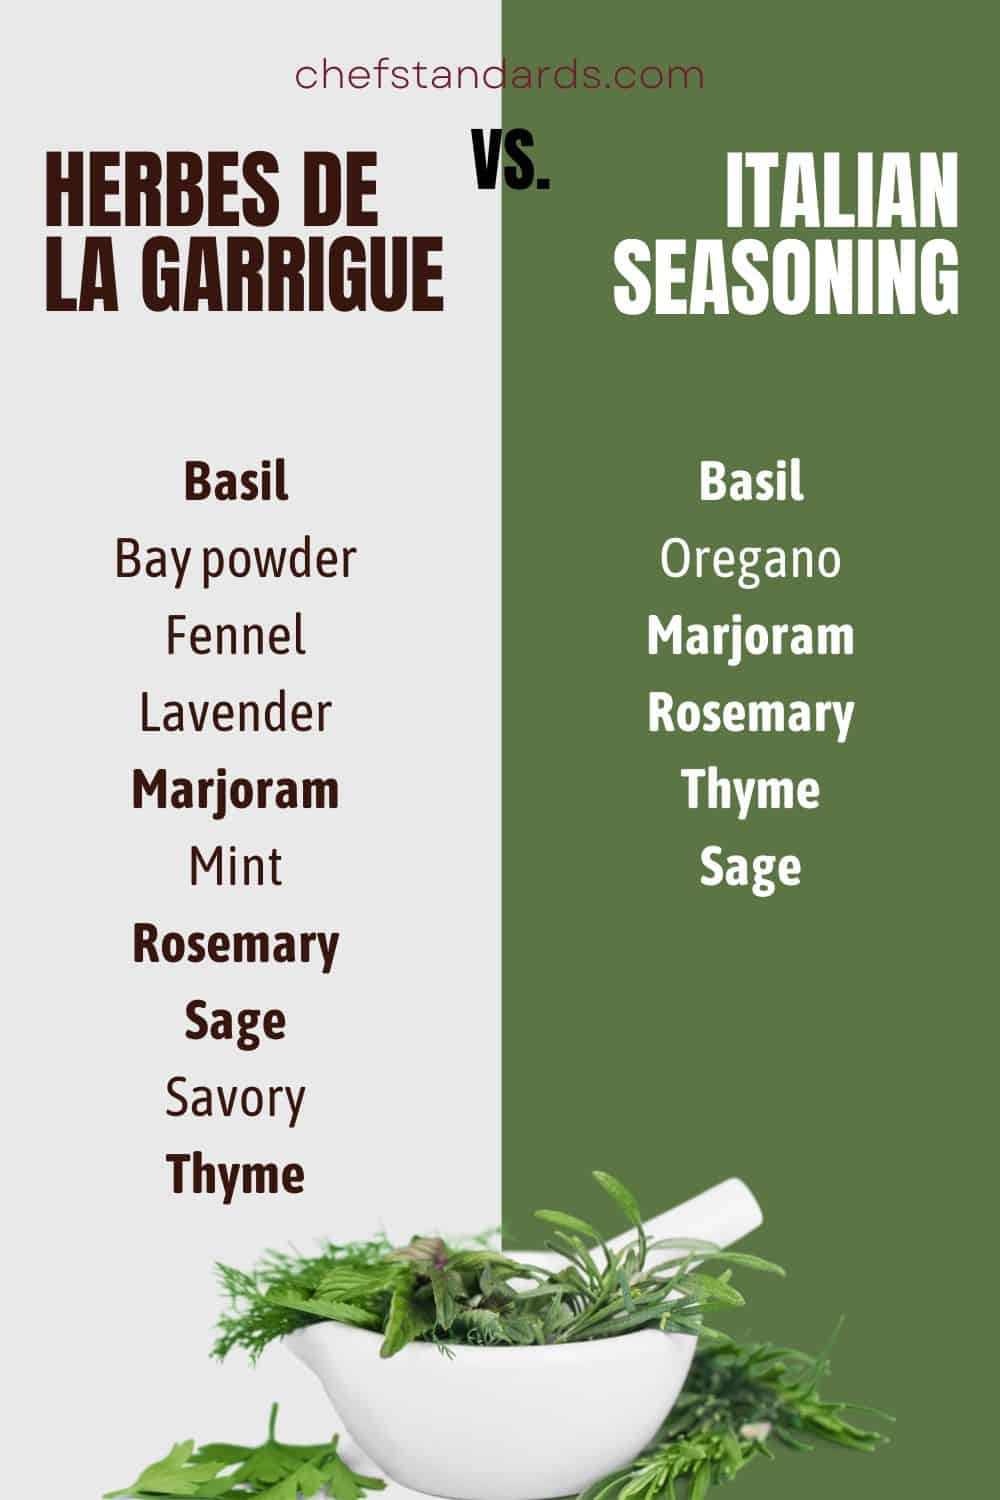 HERBES DE LA GARRIGUe vs. condimento italiano